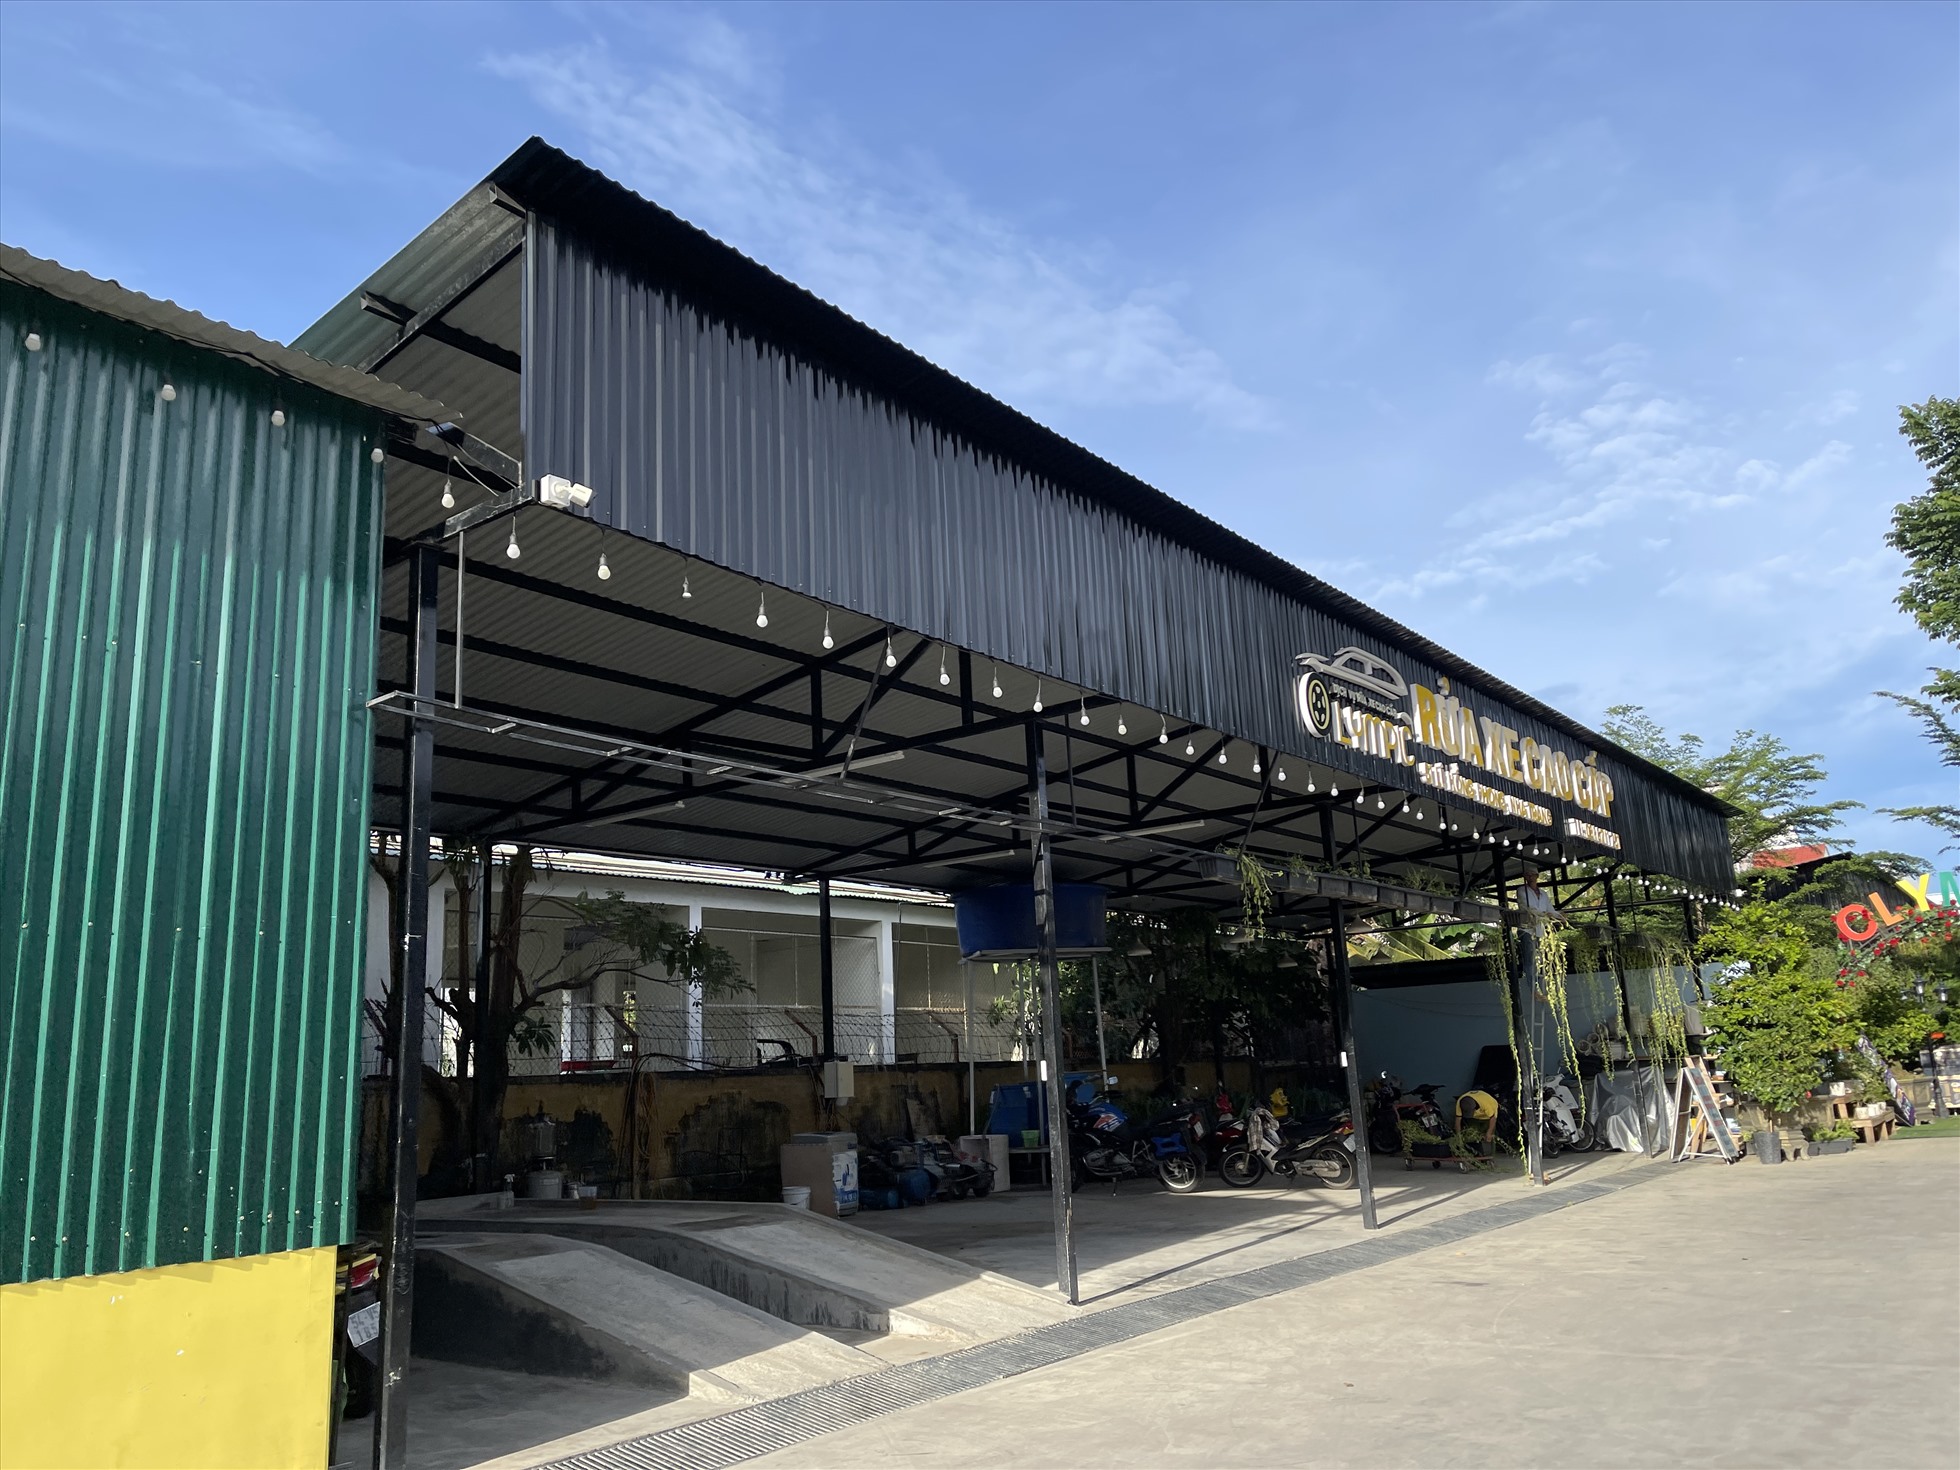 Mặc dù ban đầu dự án có tên là trung tâm Ford Nha Trang nhưng trong thực tế, khu đất 51 Lê Hồng Phong này xuất hiện một điểm rửa xe, quán cafe